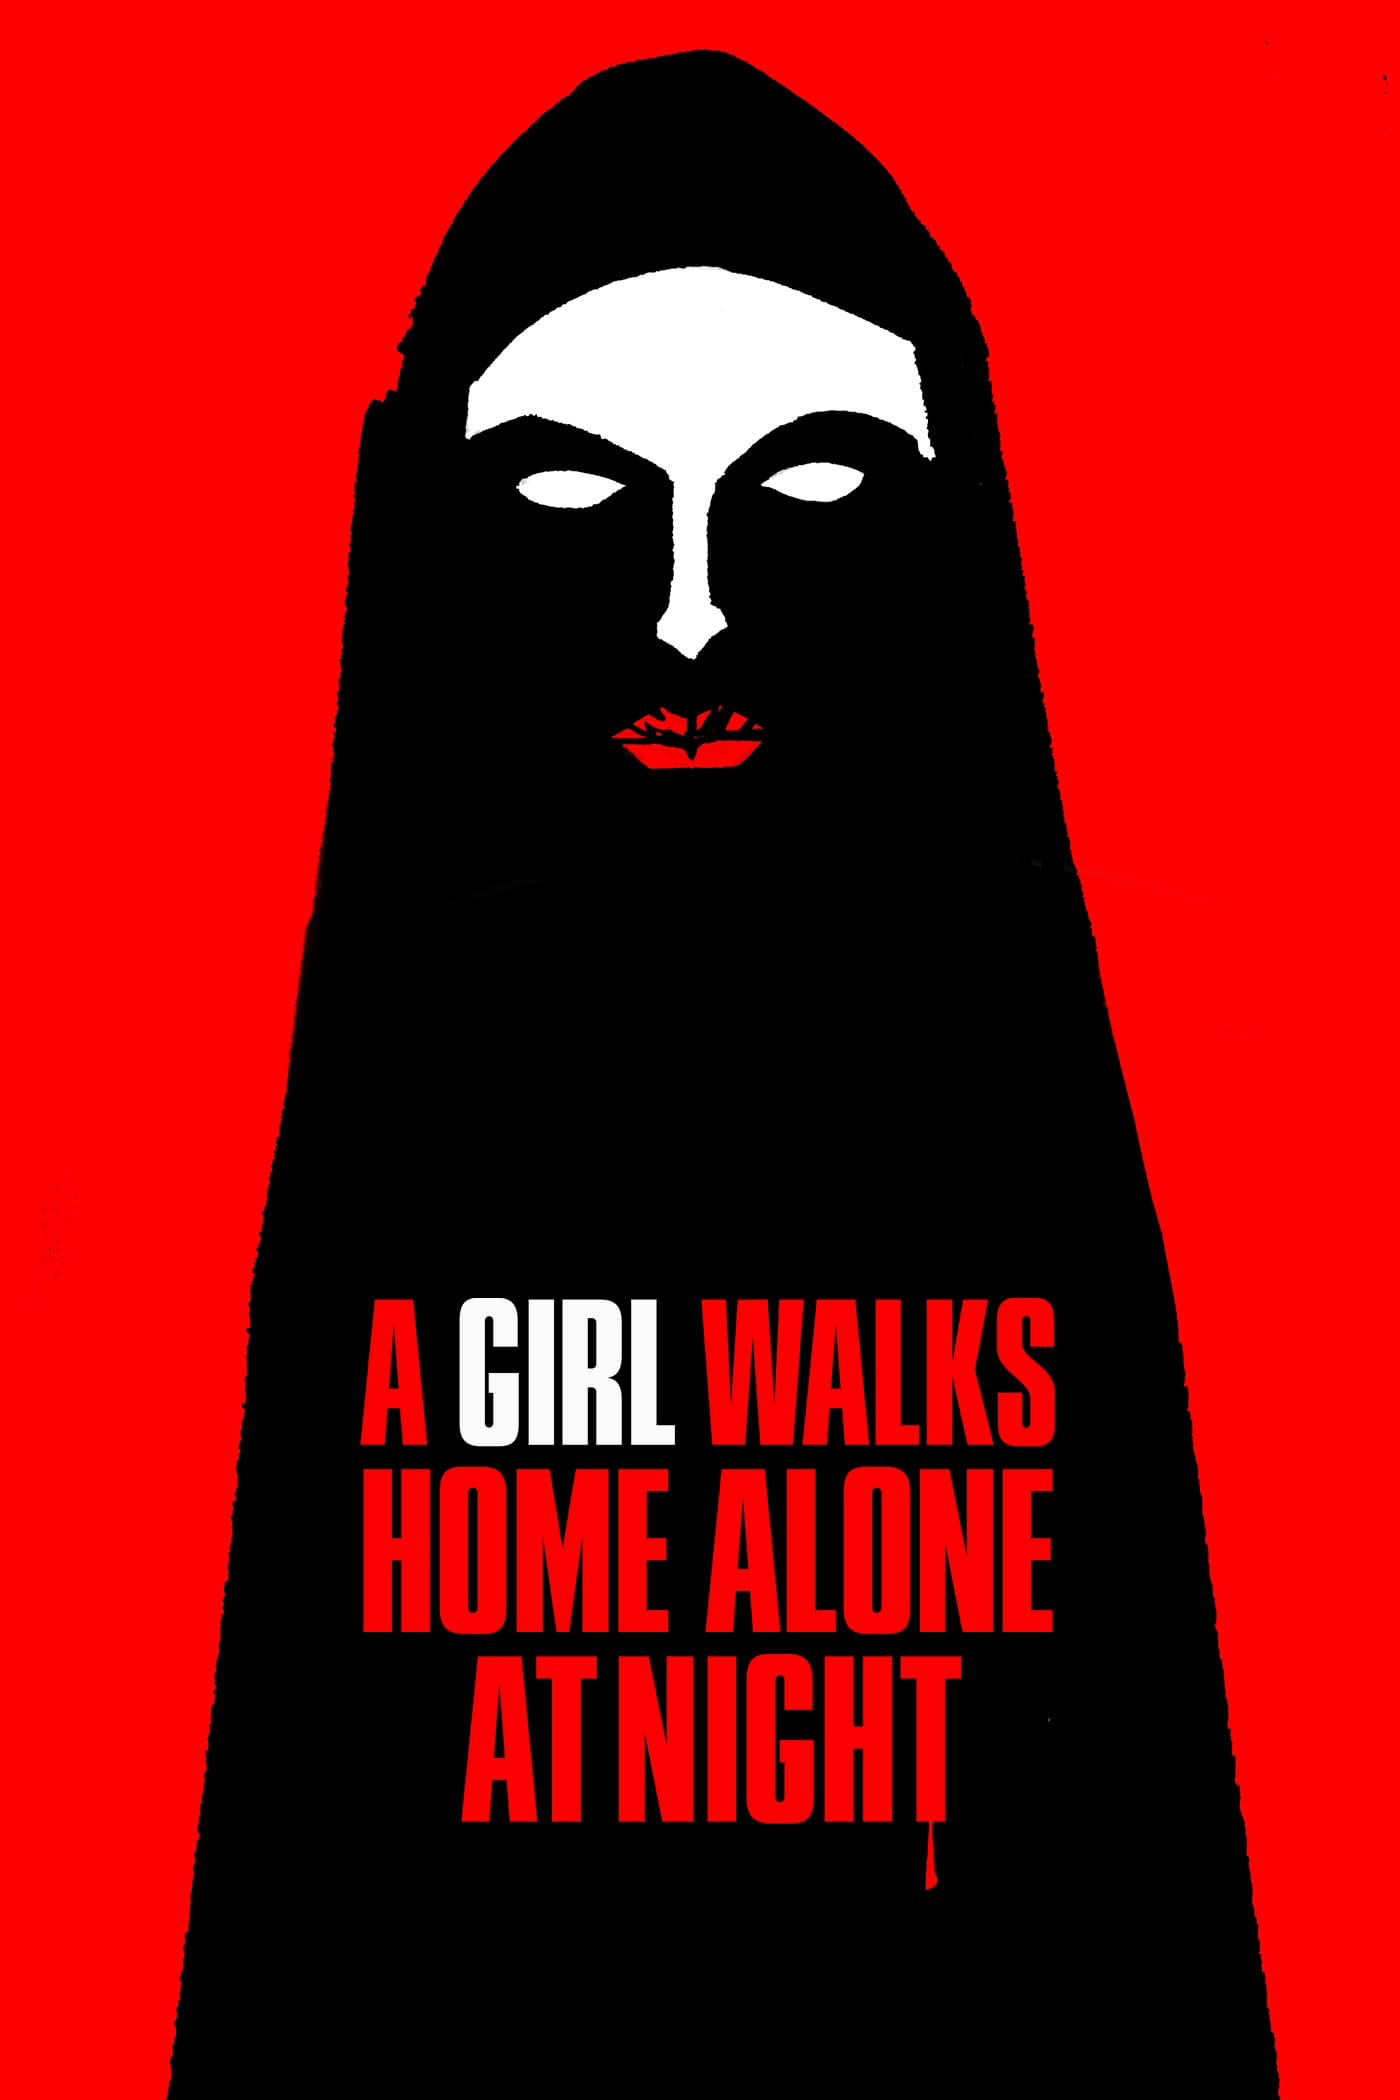 Una chica vuelve a casa sola de noche